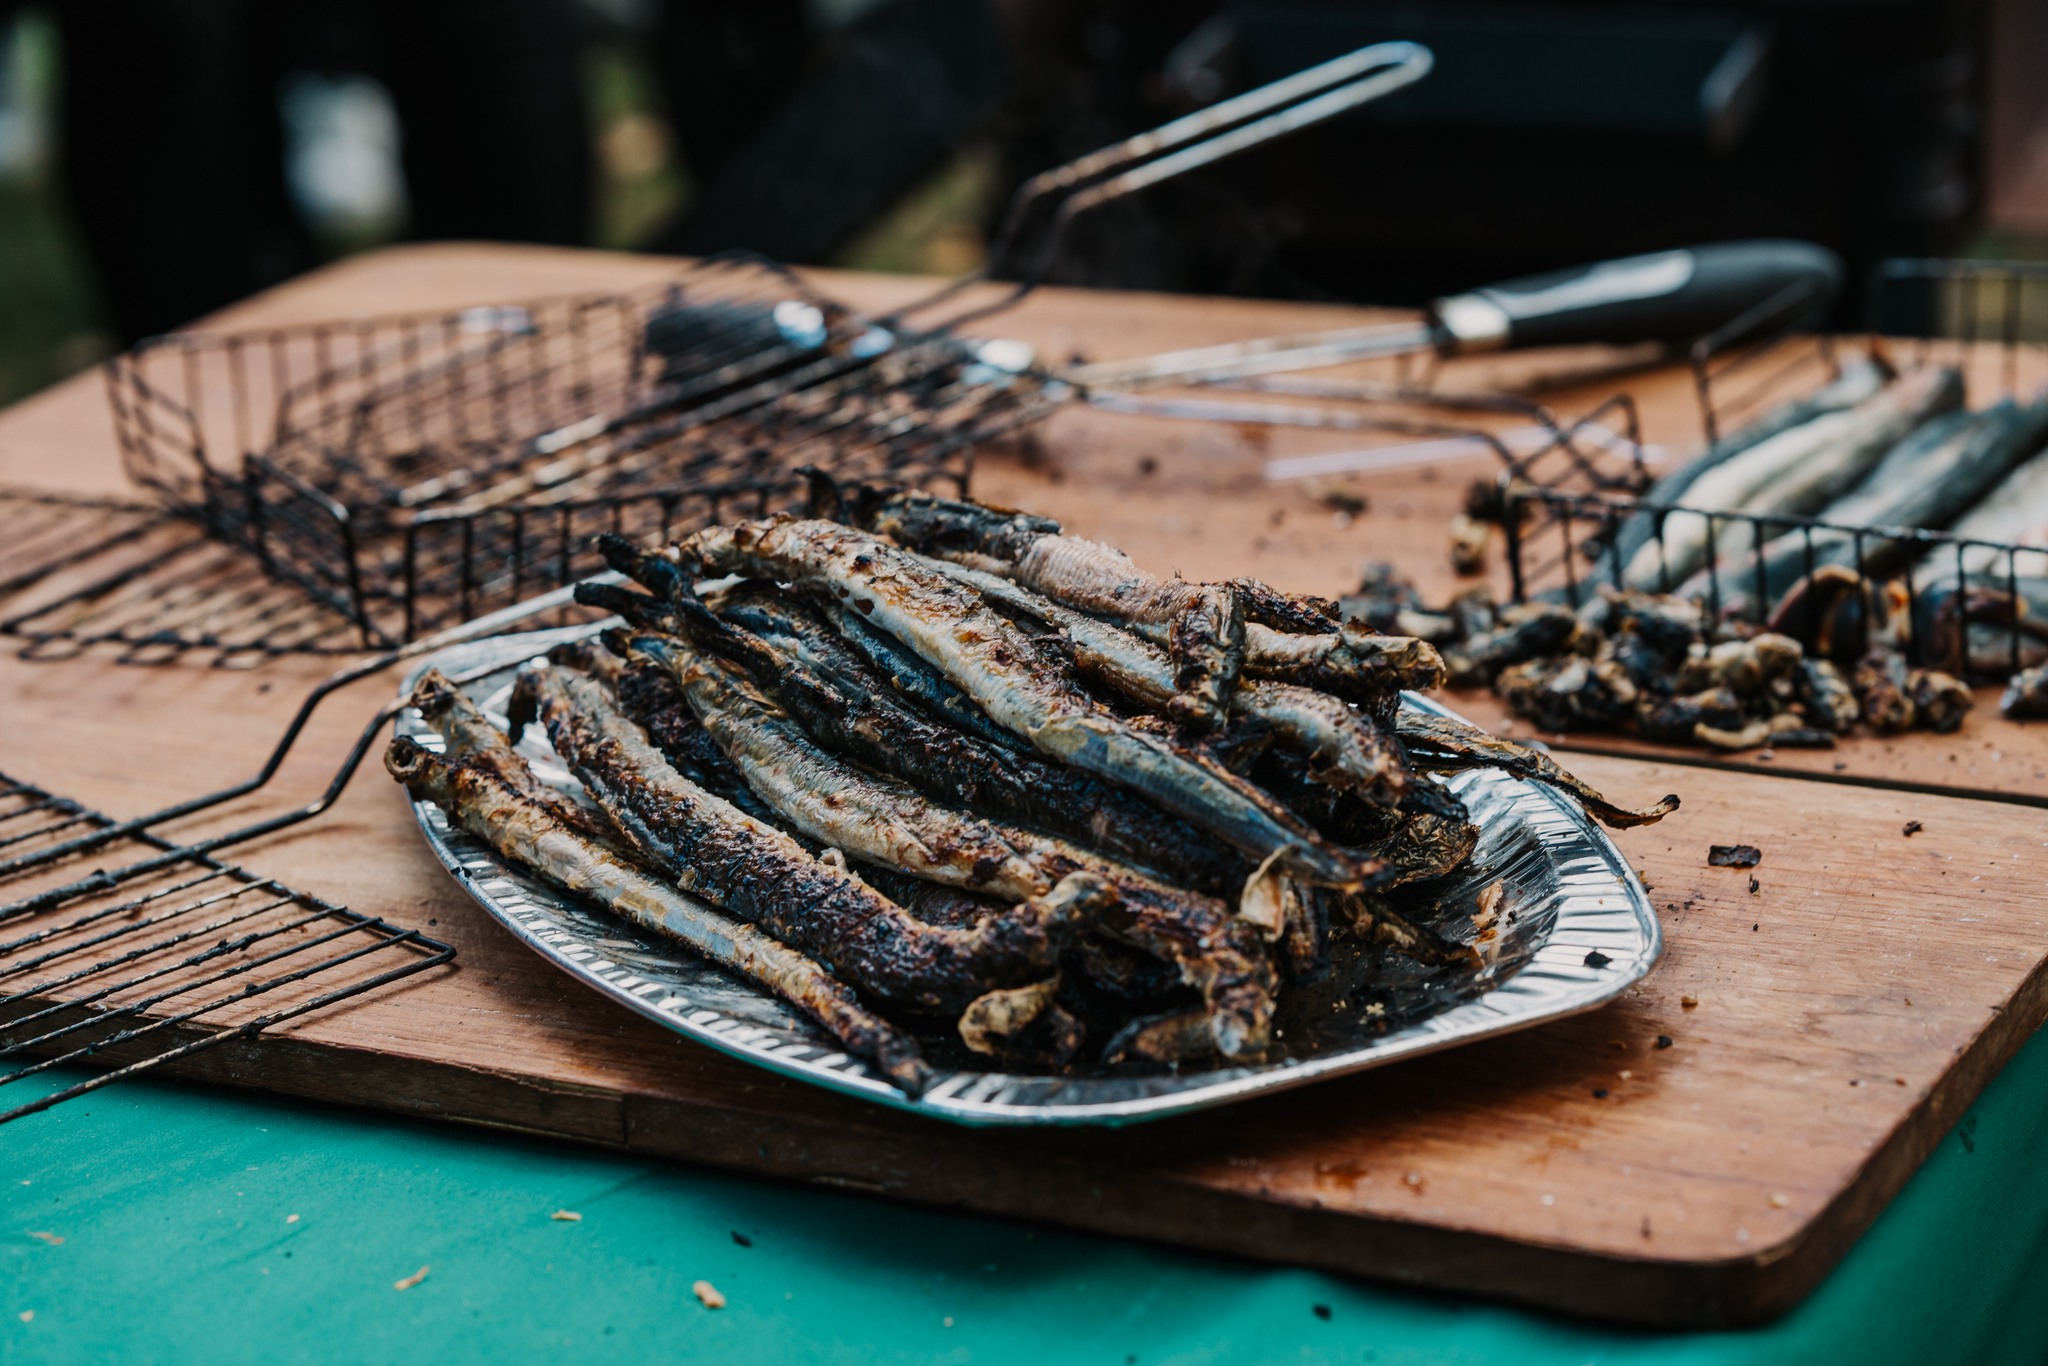 Nahkiaiset ovat Itämeren alueen ulkopuolella harvoin ravintoloiden ruokalistoille päätyvä kalalaji, mutta Narva-Jõesuussa niitä on pyydetty jo muinais